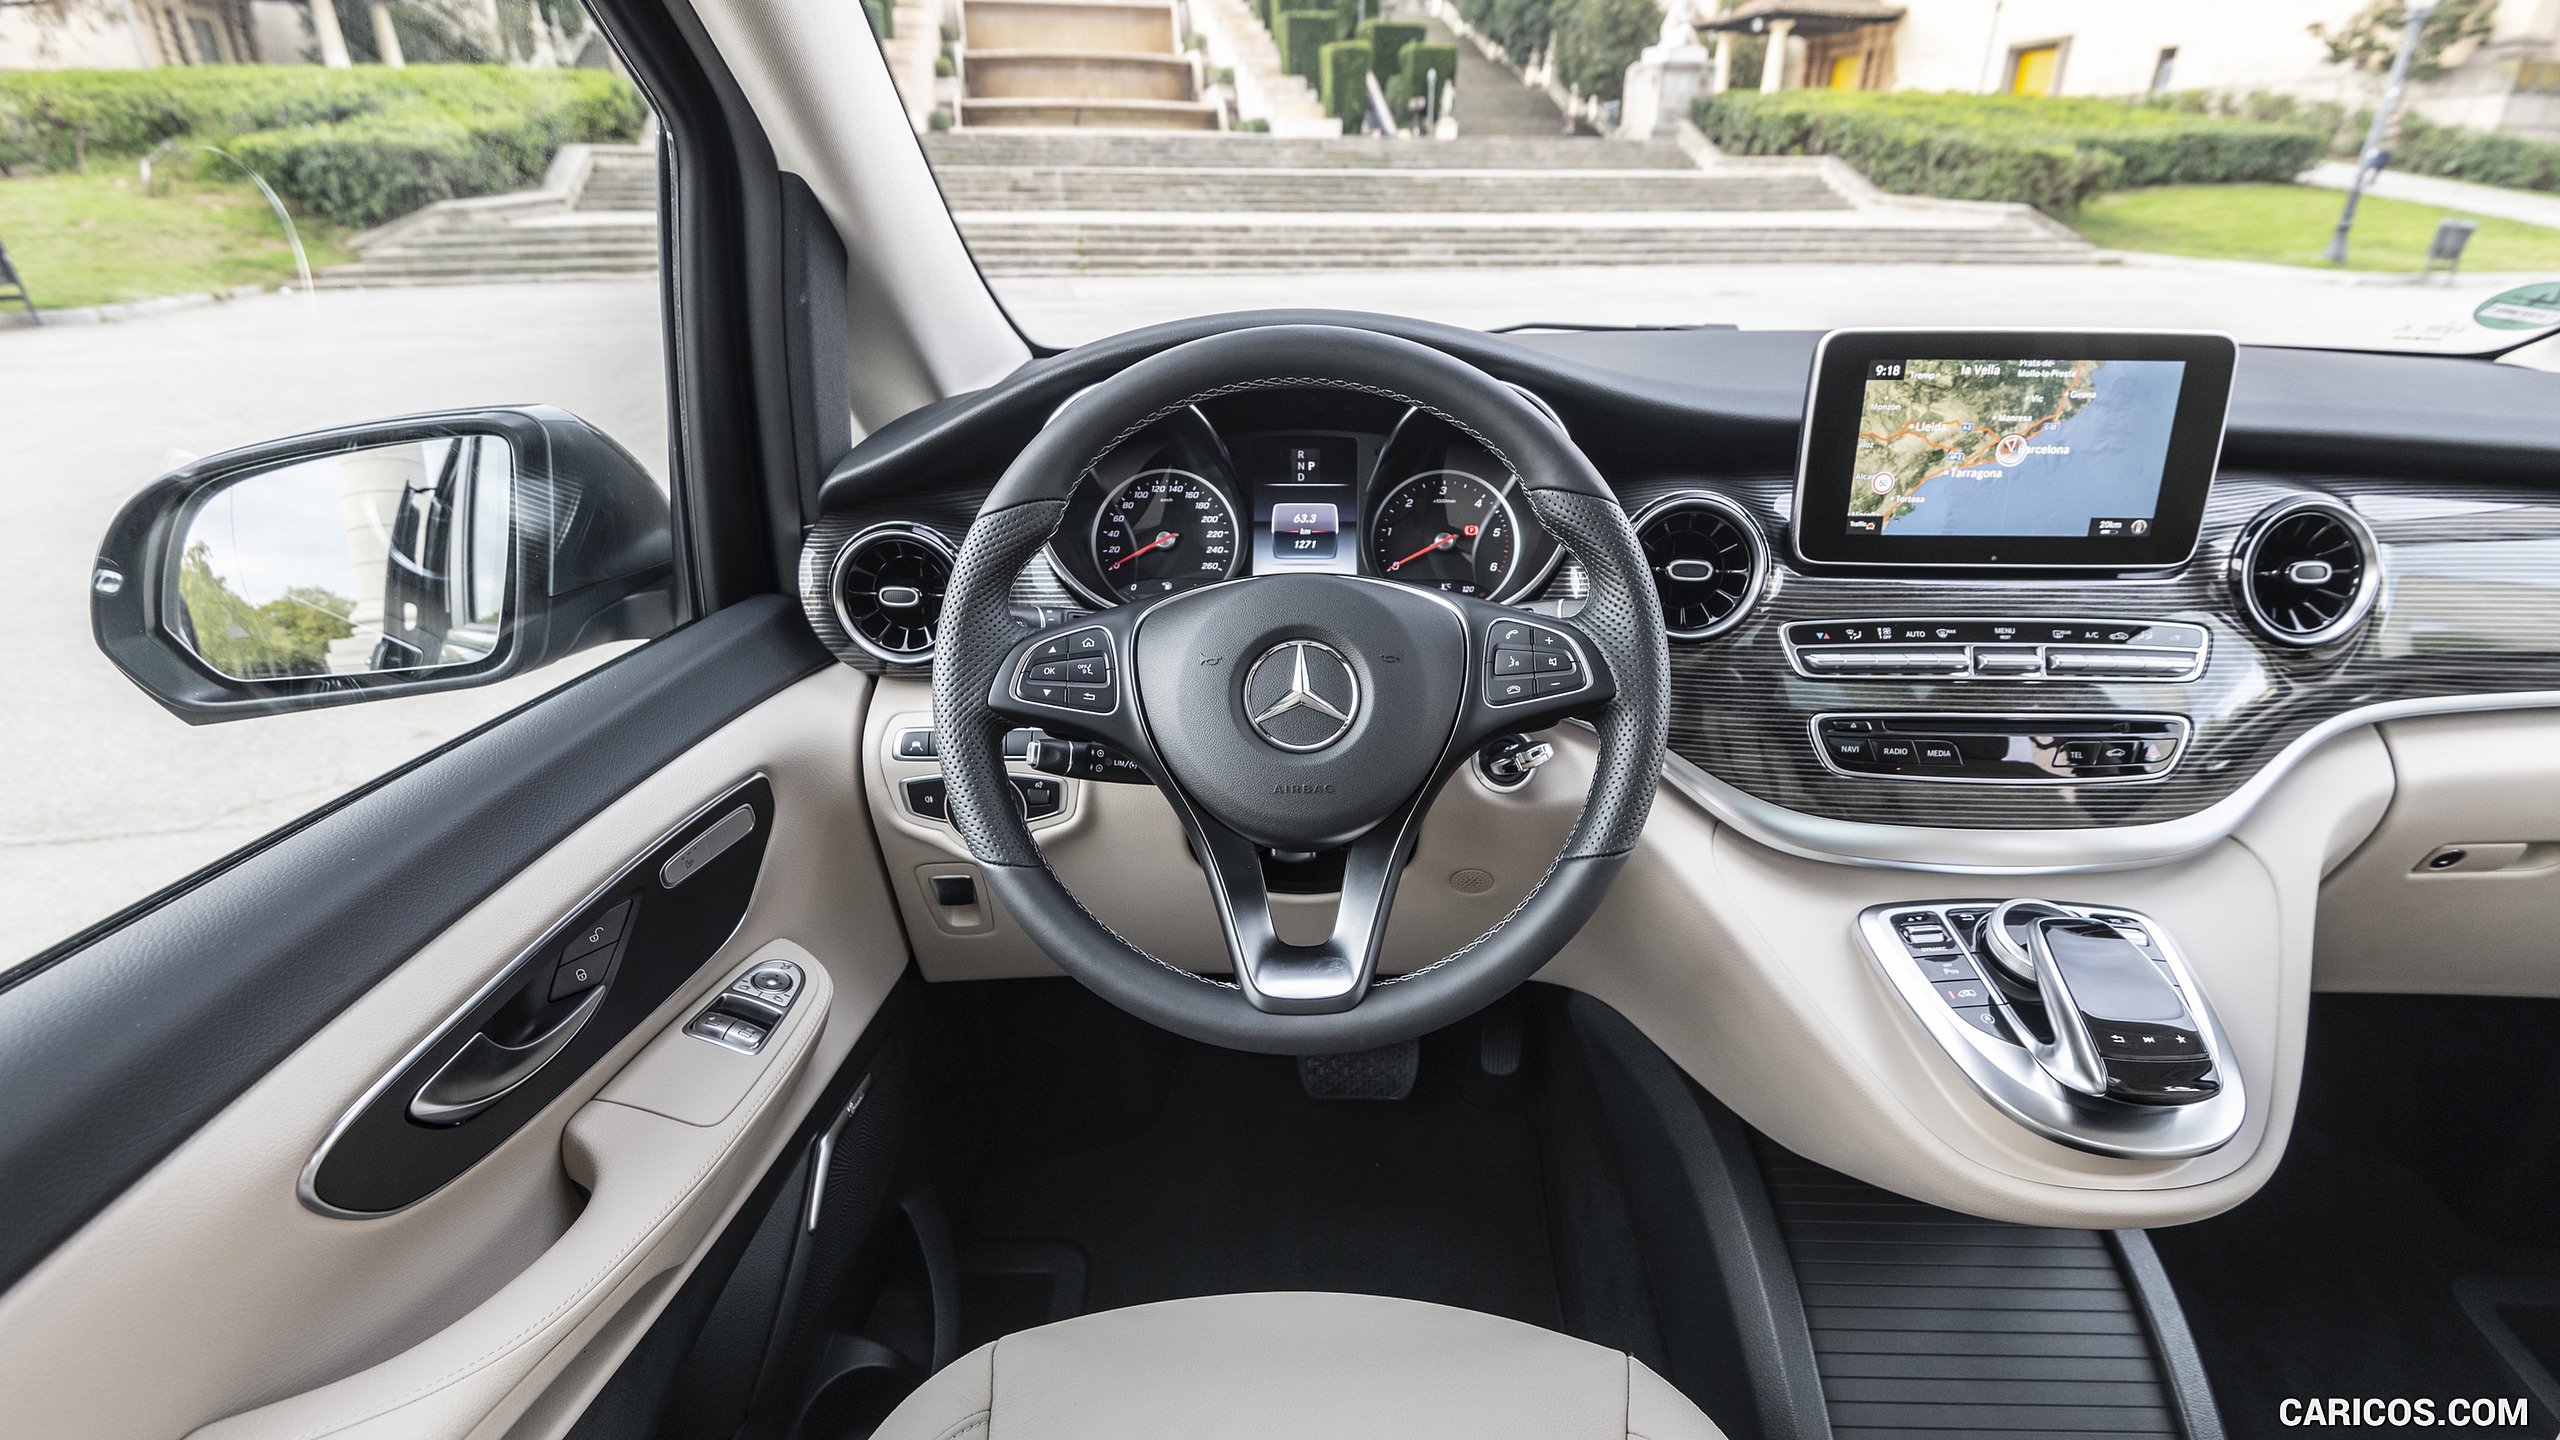 2019 Mercedes-Benz V-Class V300d AVANTGARDE - Interior, Cockpit, #111 of 216